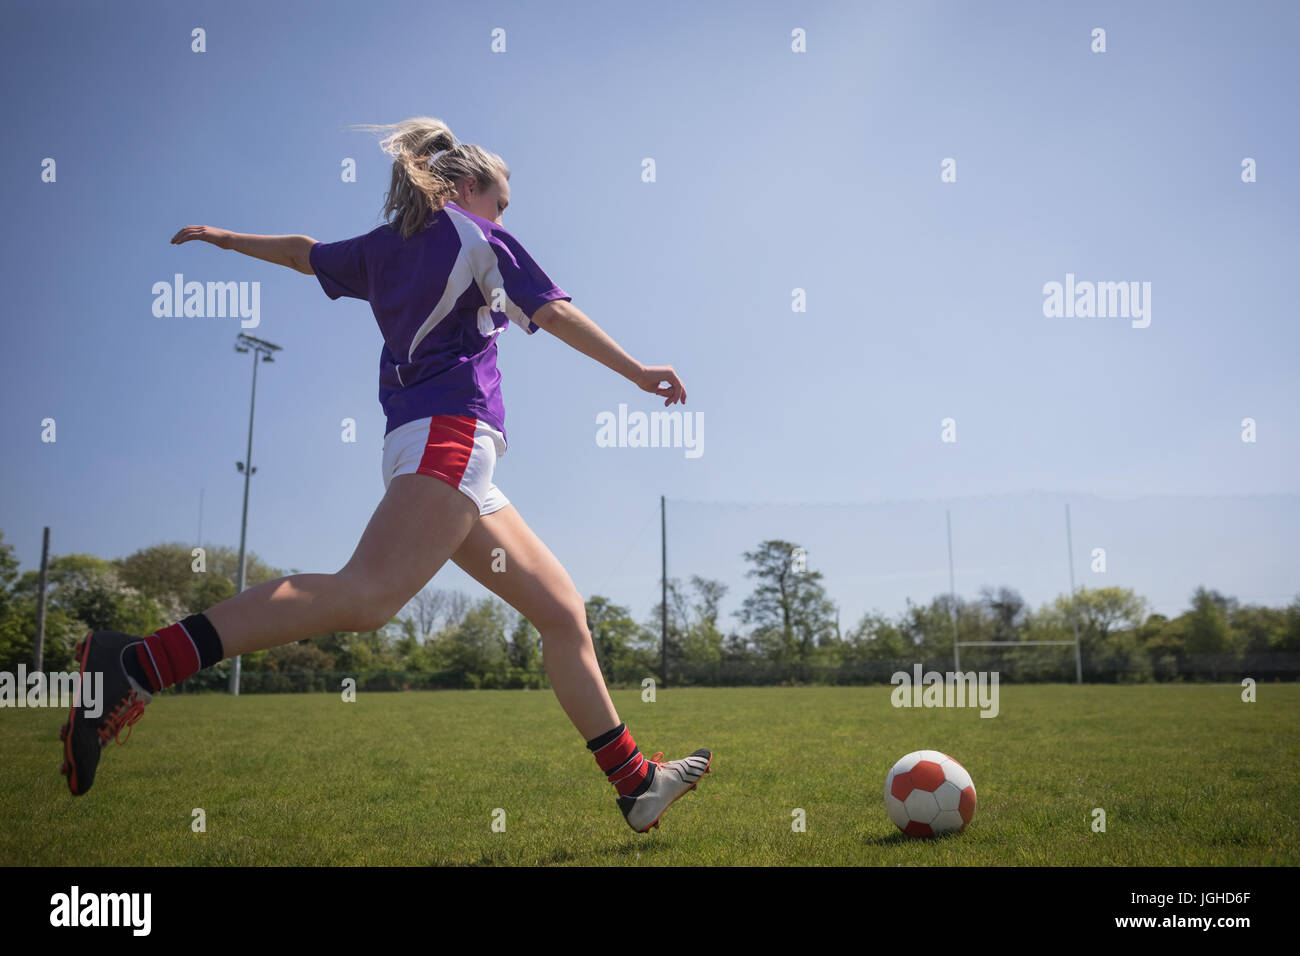 Toute la longueur de jeune femme jouant au football sur terrain contre ciel clair Banque D'Images